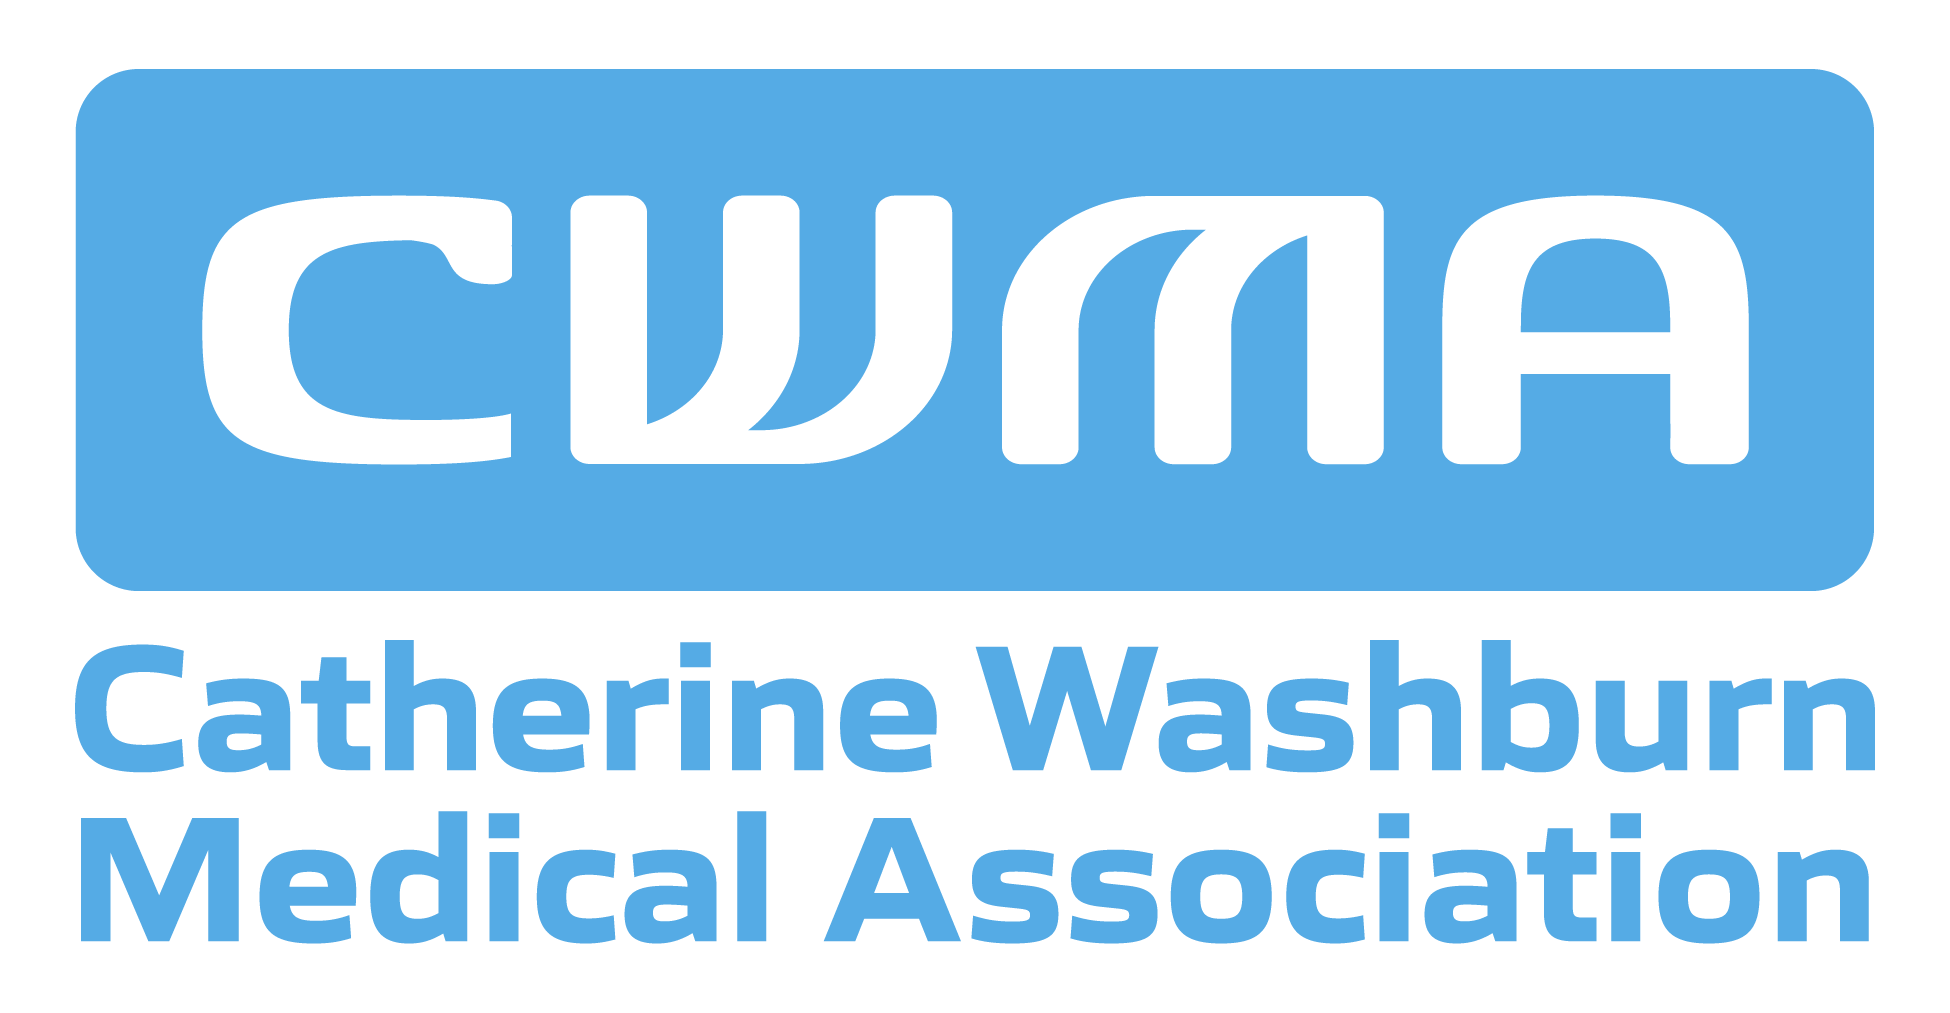 Catherine Washburn Medical Association